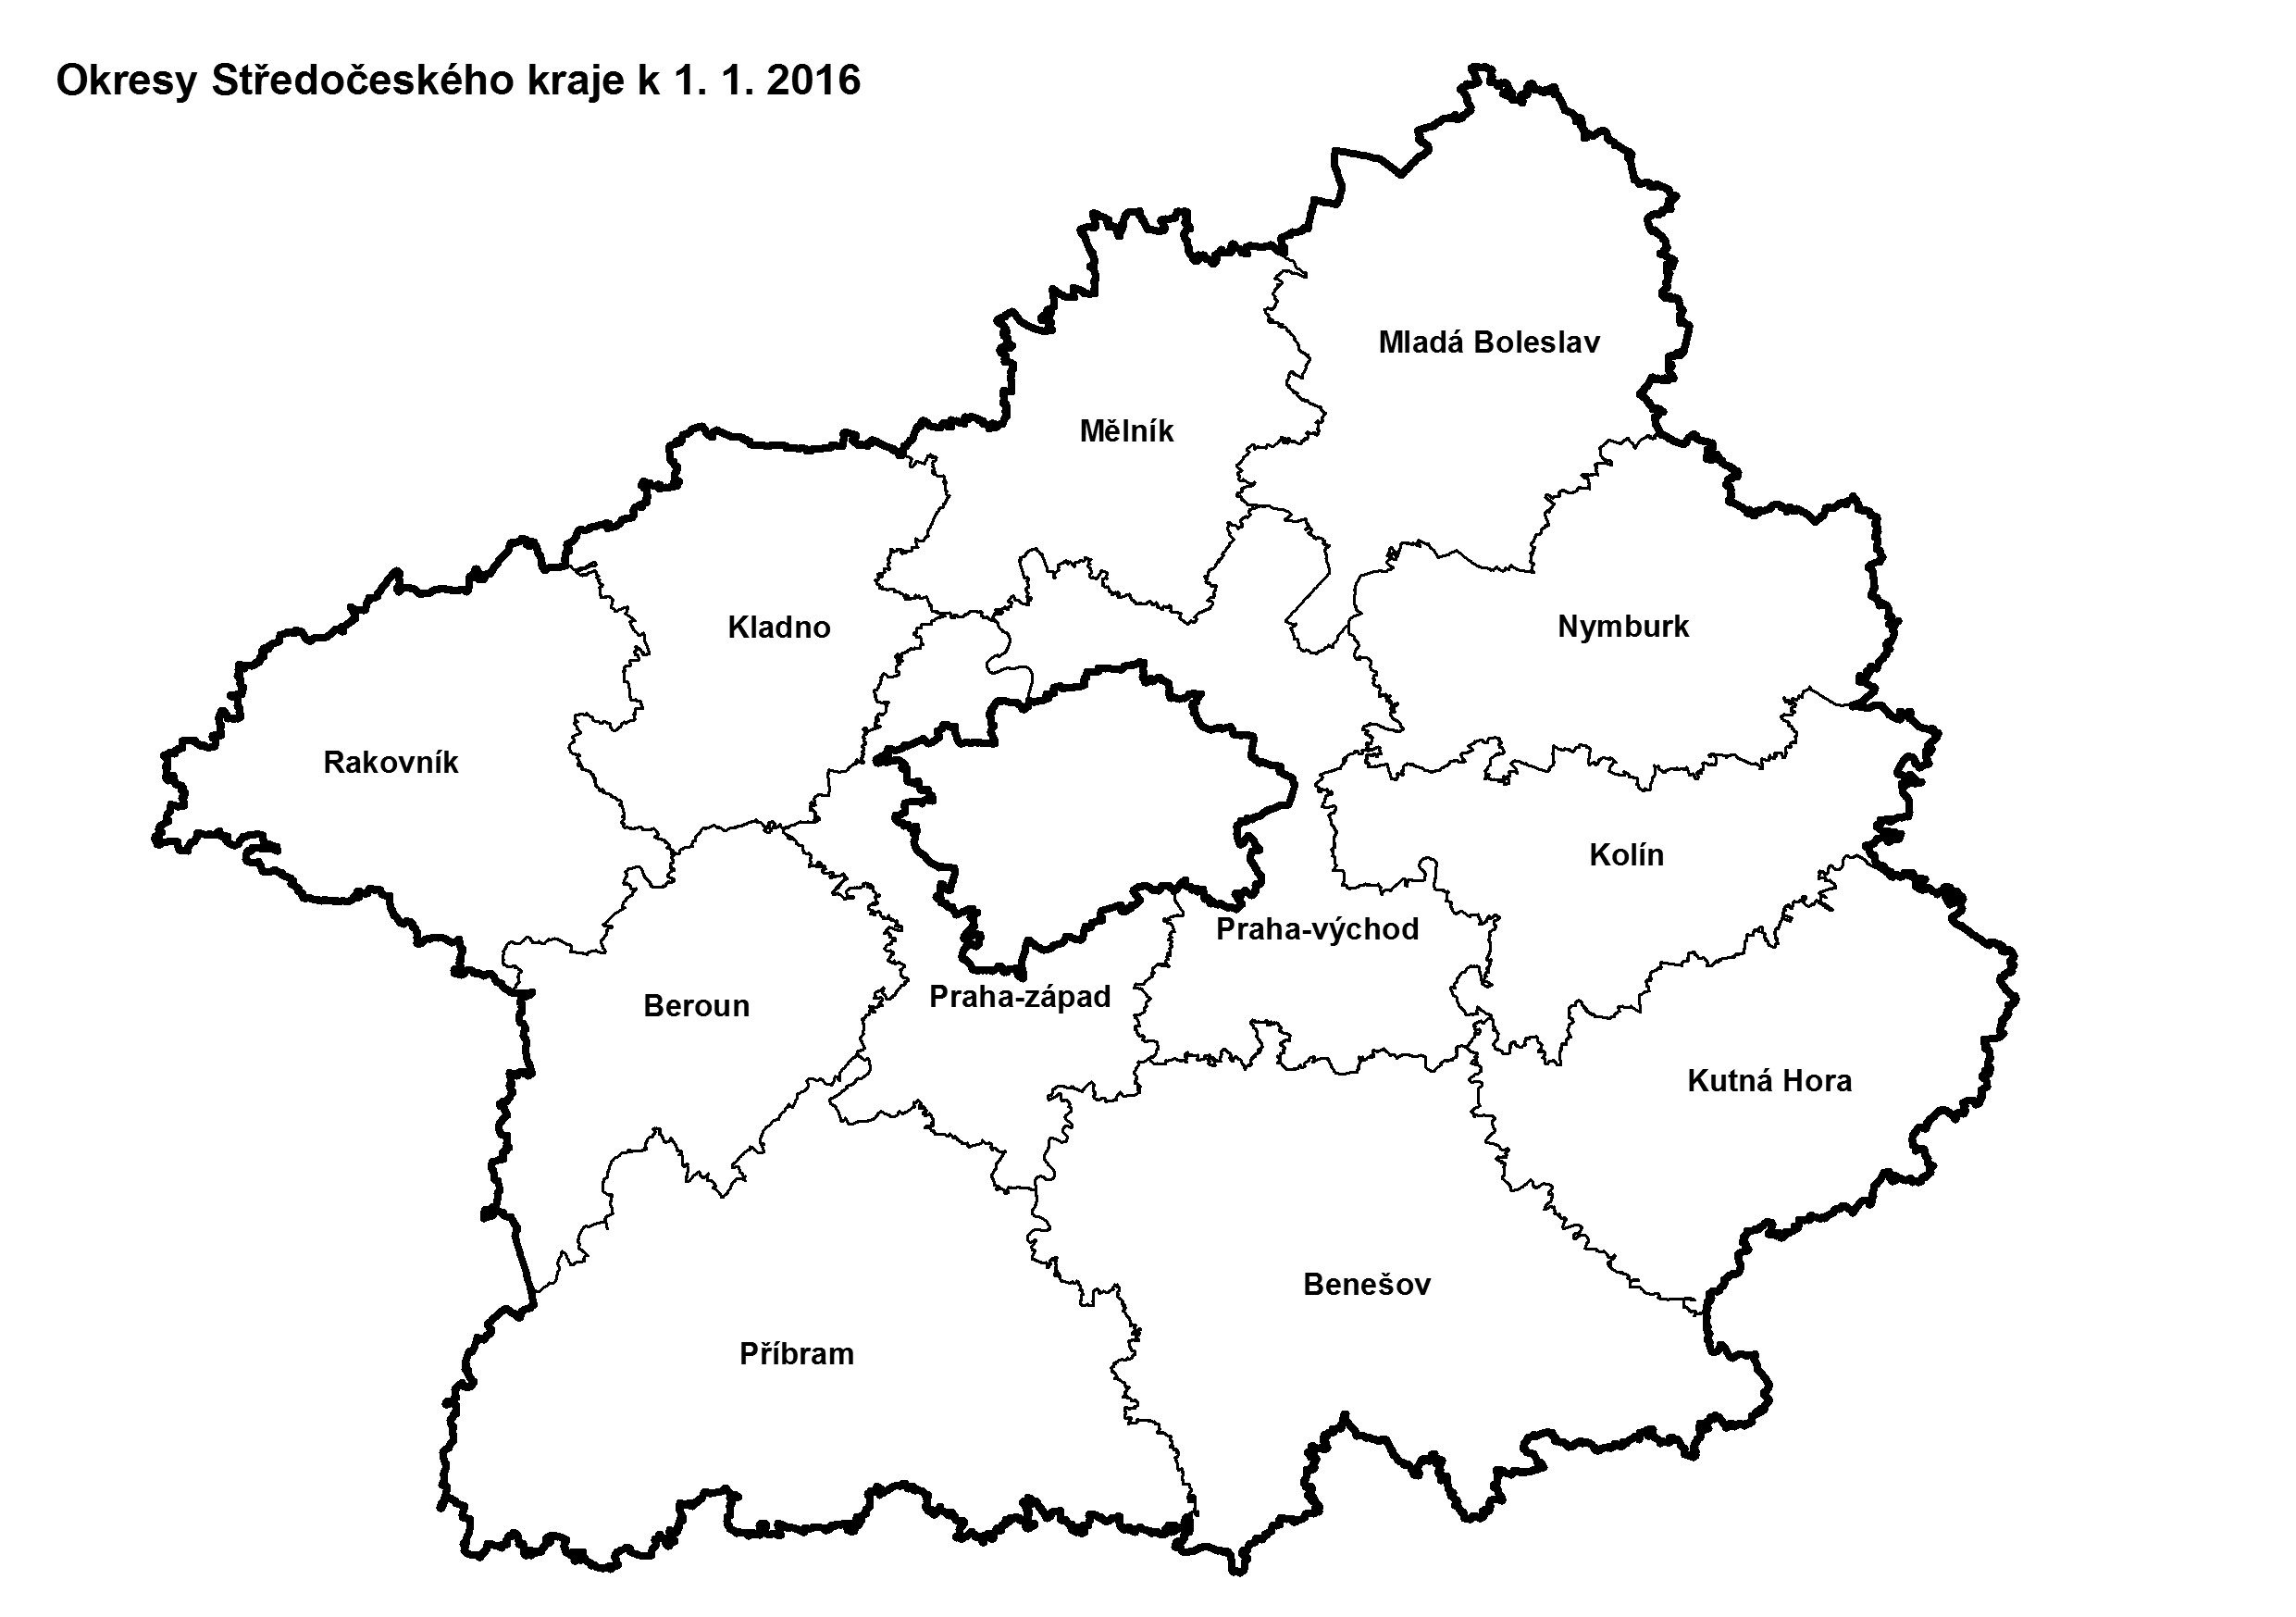 Územní členění kraje na okresy k 1. 1. 2016